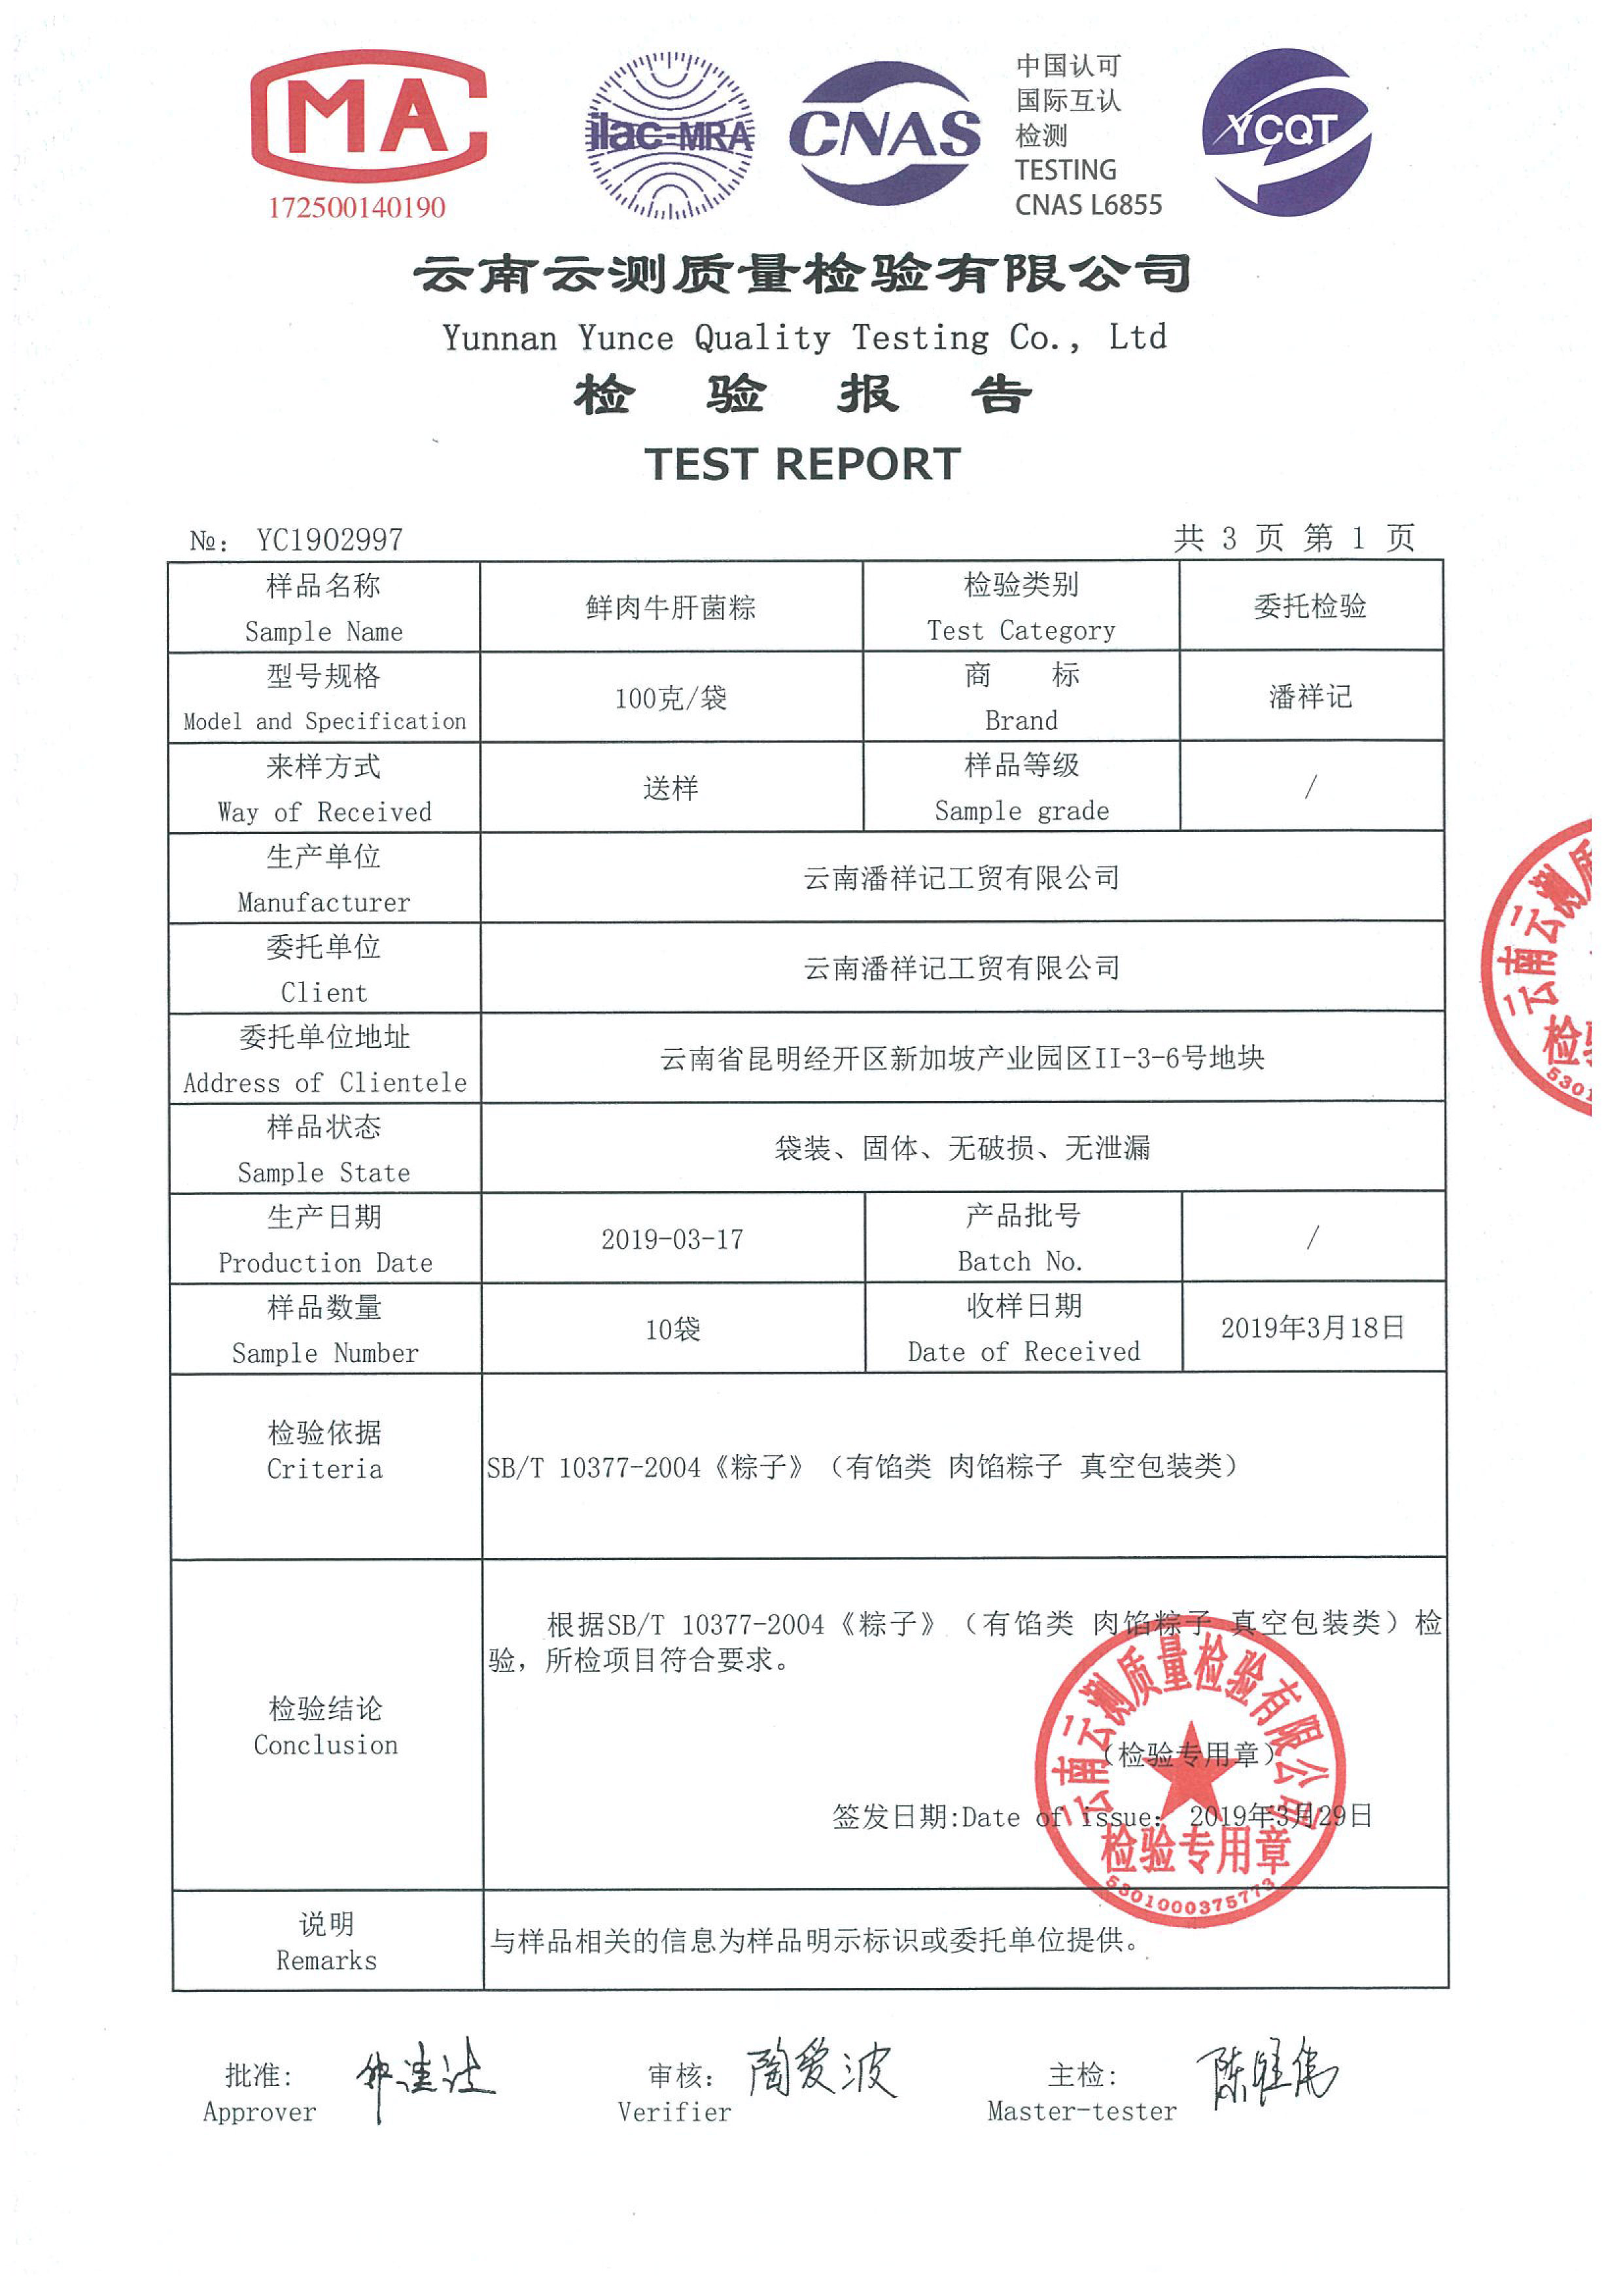 2019年潘祥记粽子质检报告